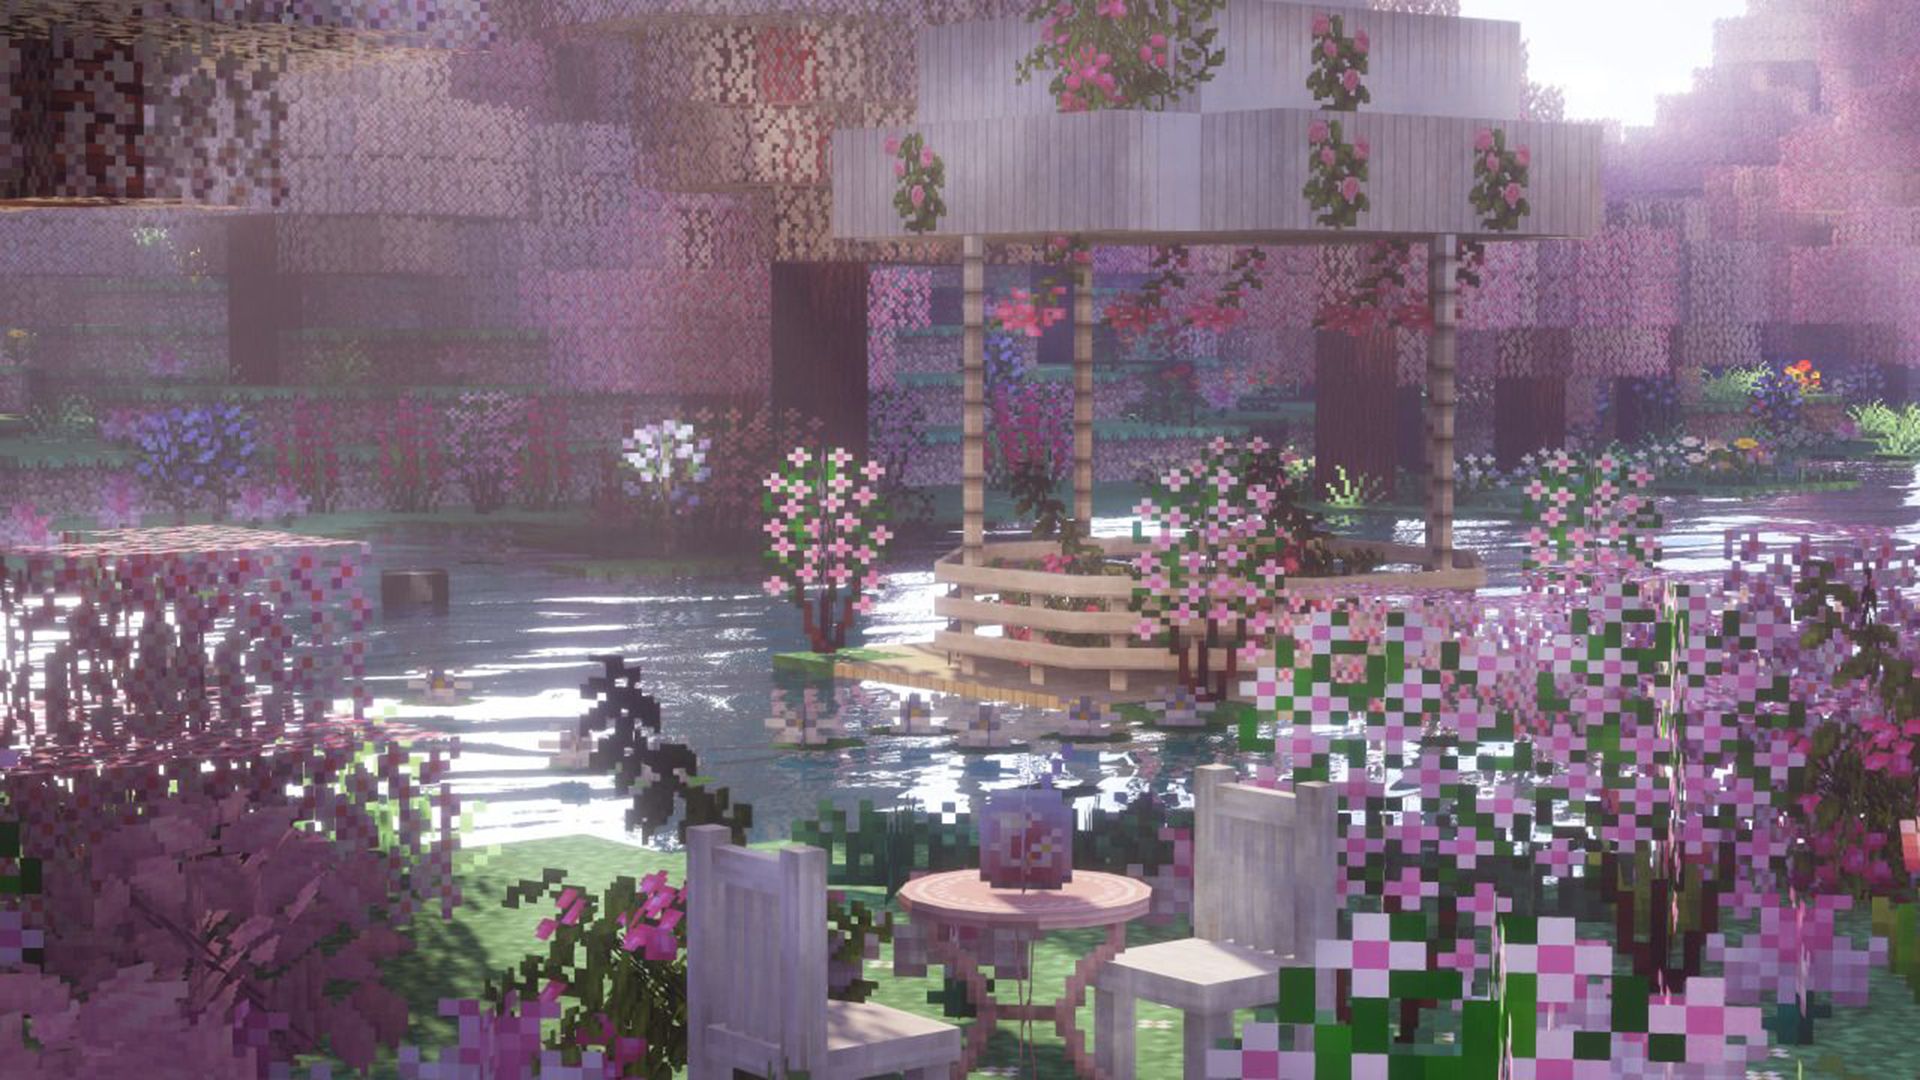 The garden in minecraft - Minecraft